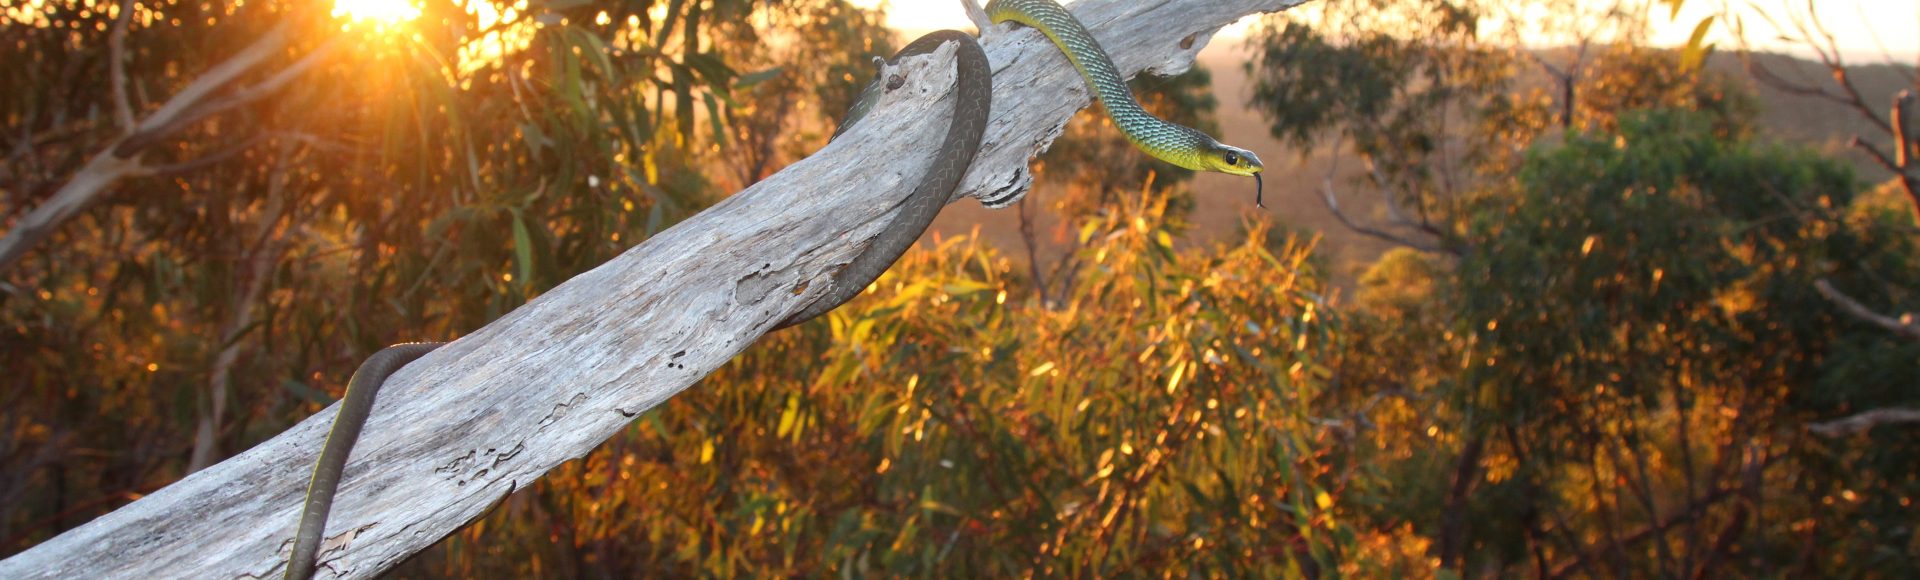 Common Tree Snake – ©Jayden Walsh